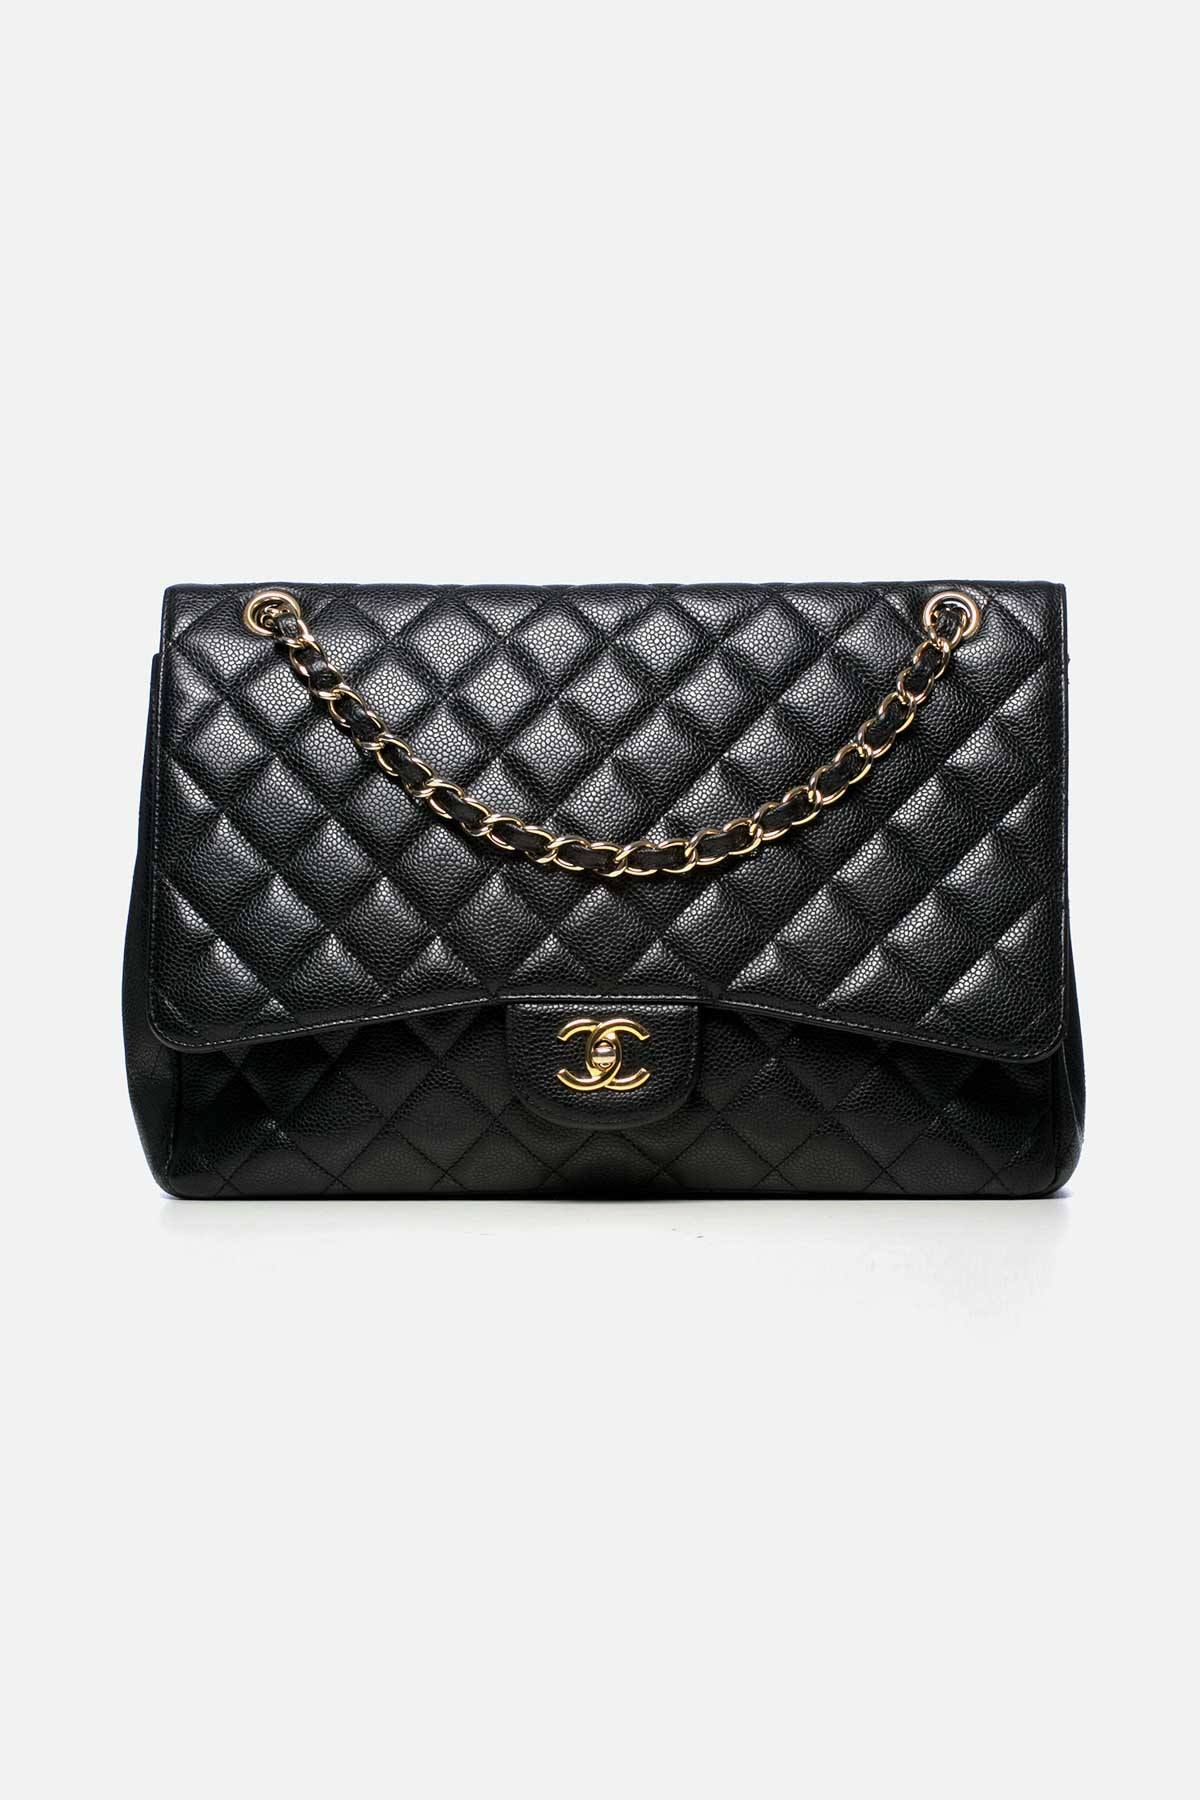 Chanel JUMBO DOUBLE FLAP BAG REWAY 1